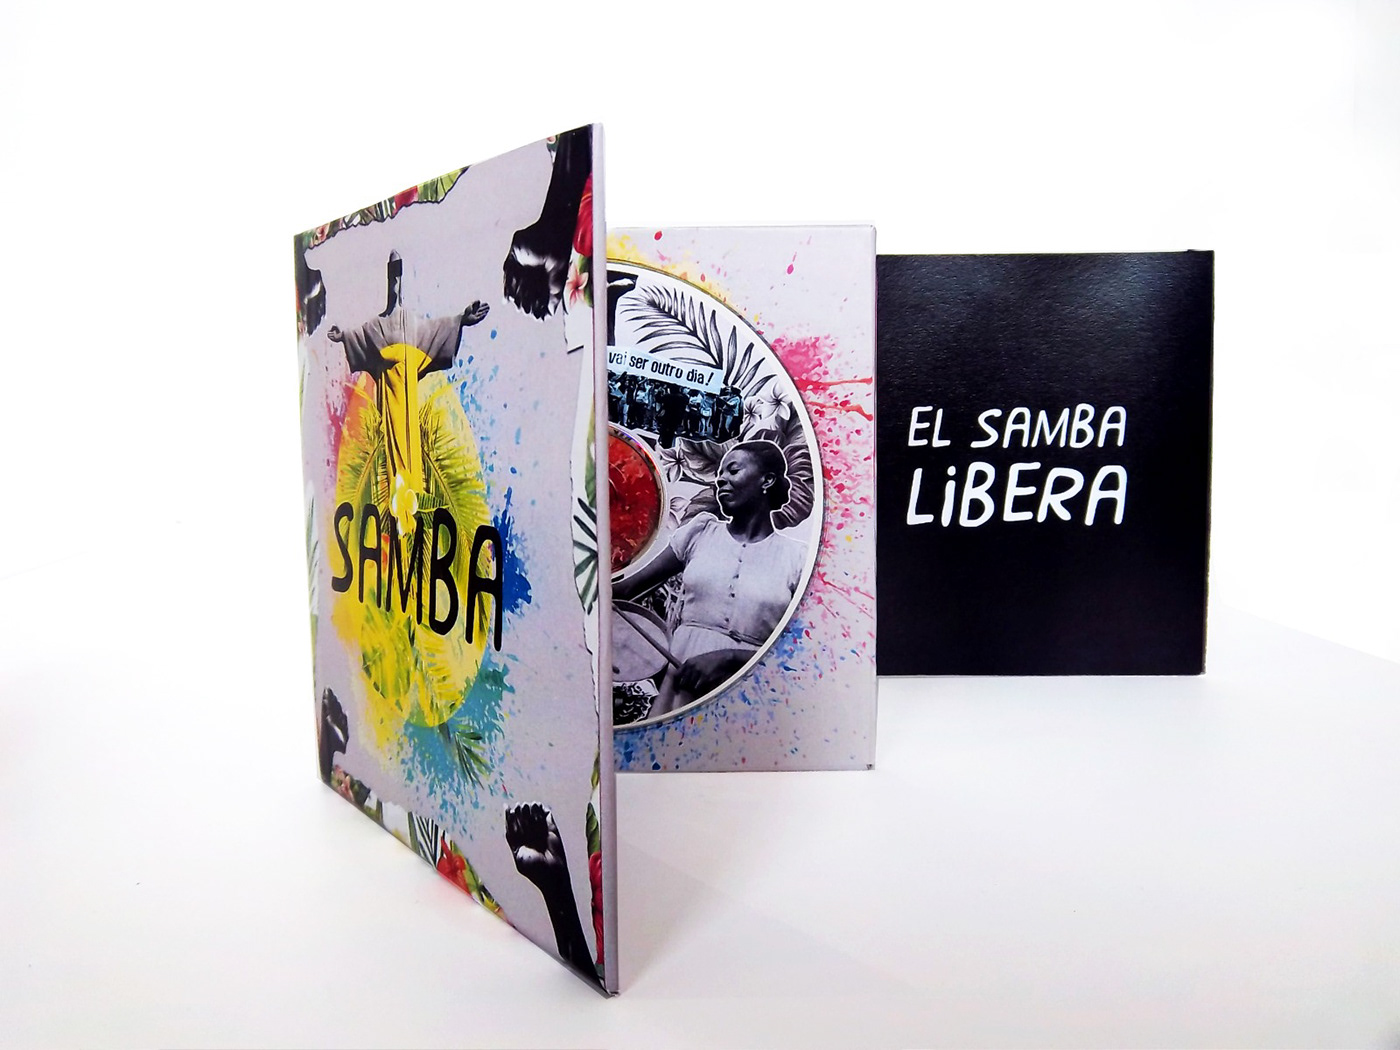 Packaging Samba Brasil collage musica discos